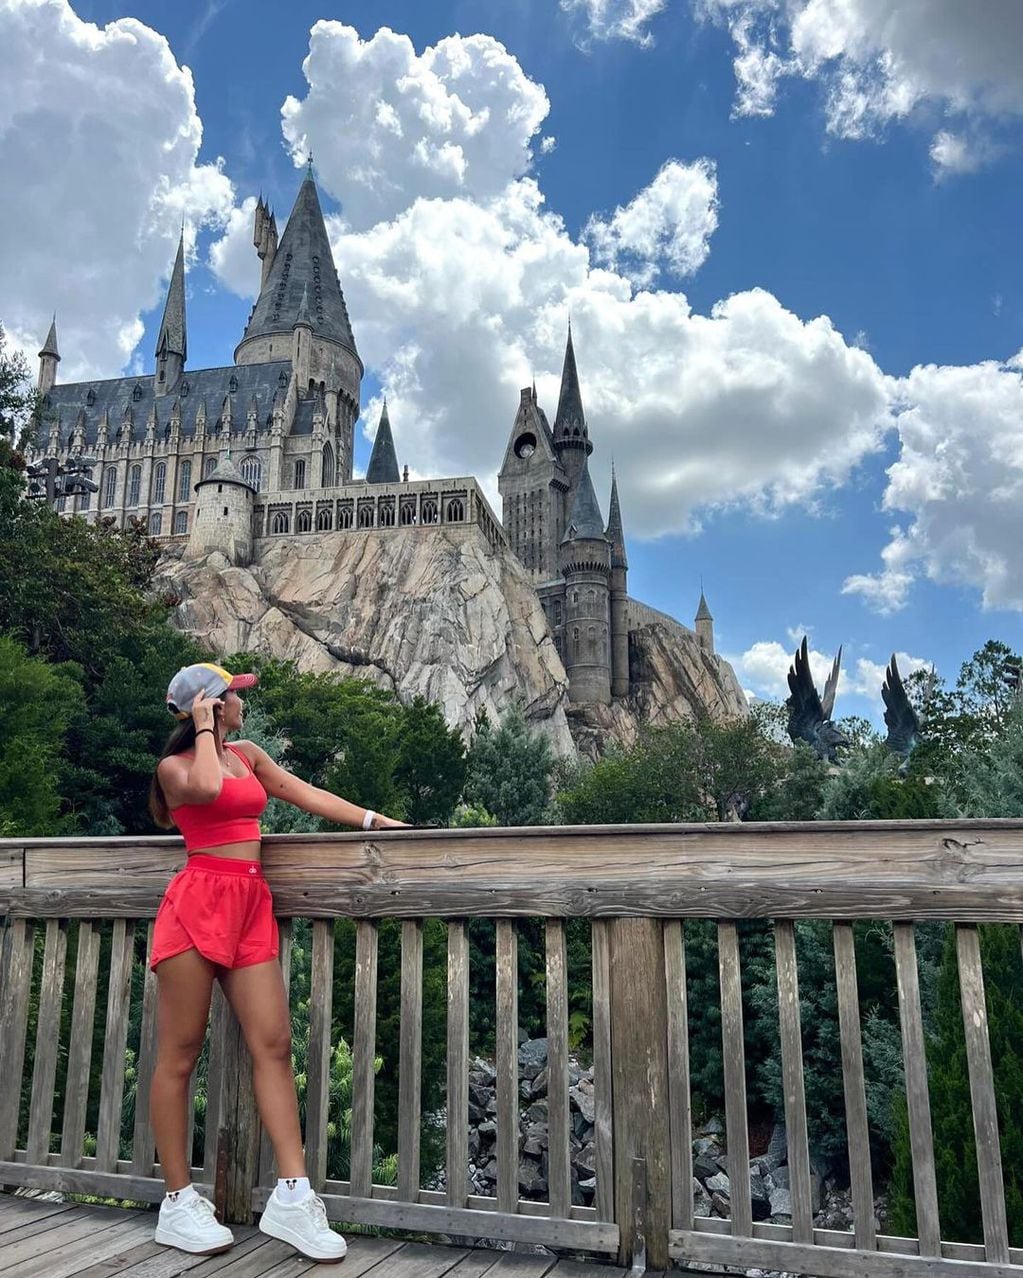 Antonela Roccuzzo cumplió su sueño como fan de Harry Potter: la esposa de Messi conoció Hogwarts